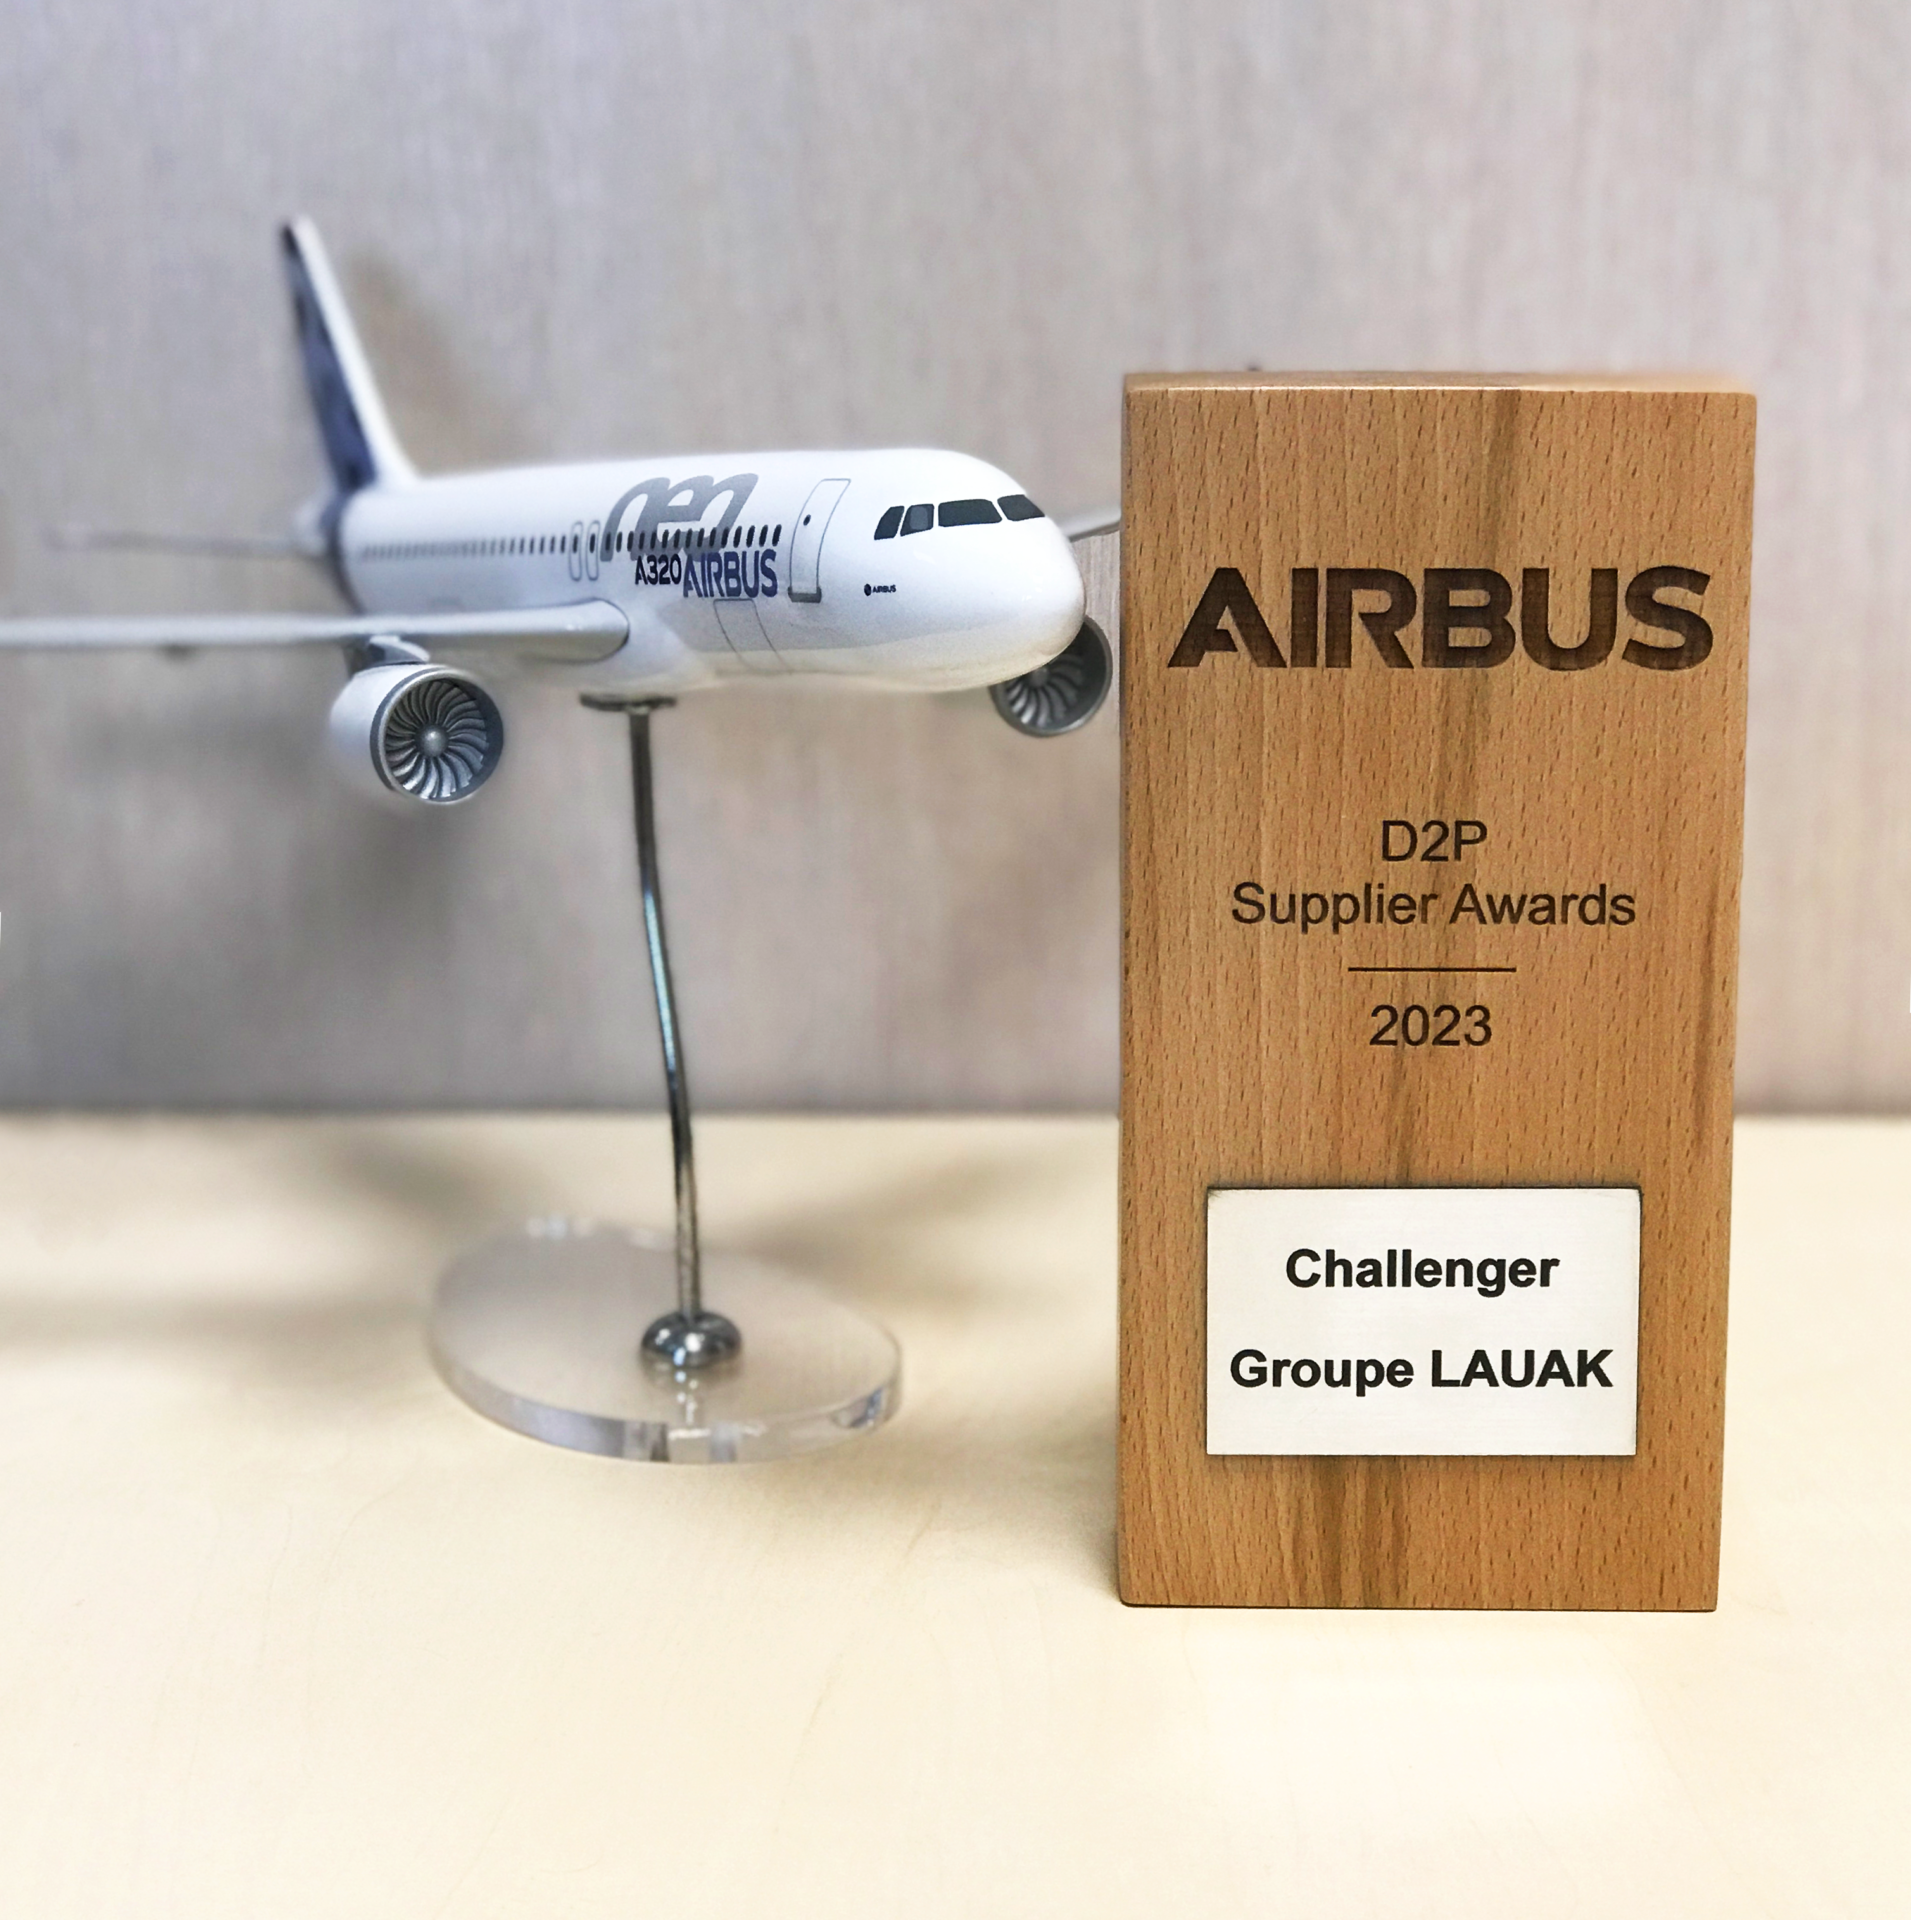 Airbus renouvelle sa confiance envers le Groupe LAUAK